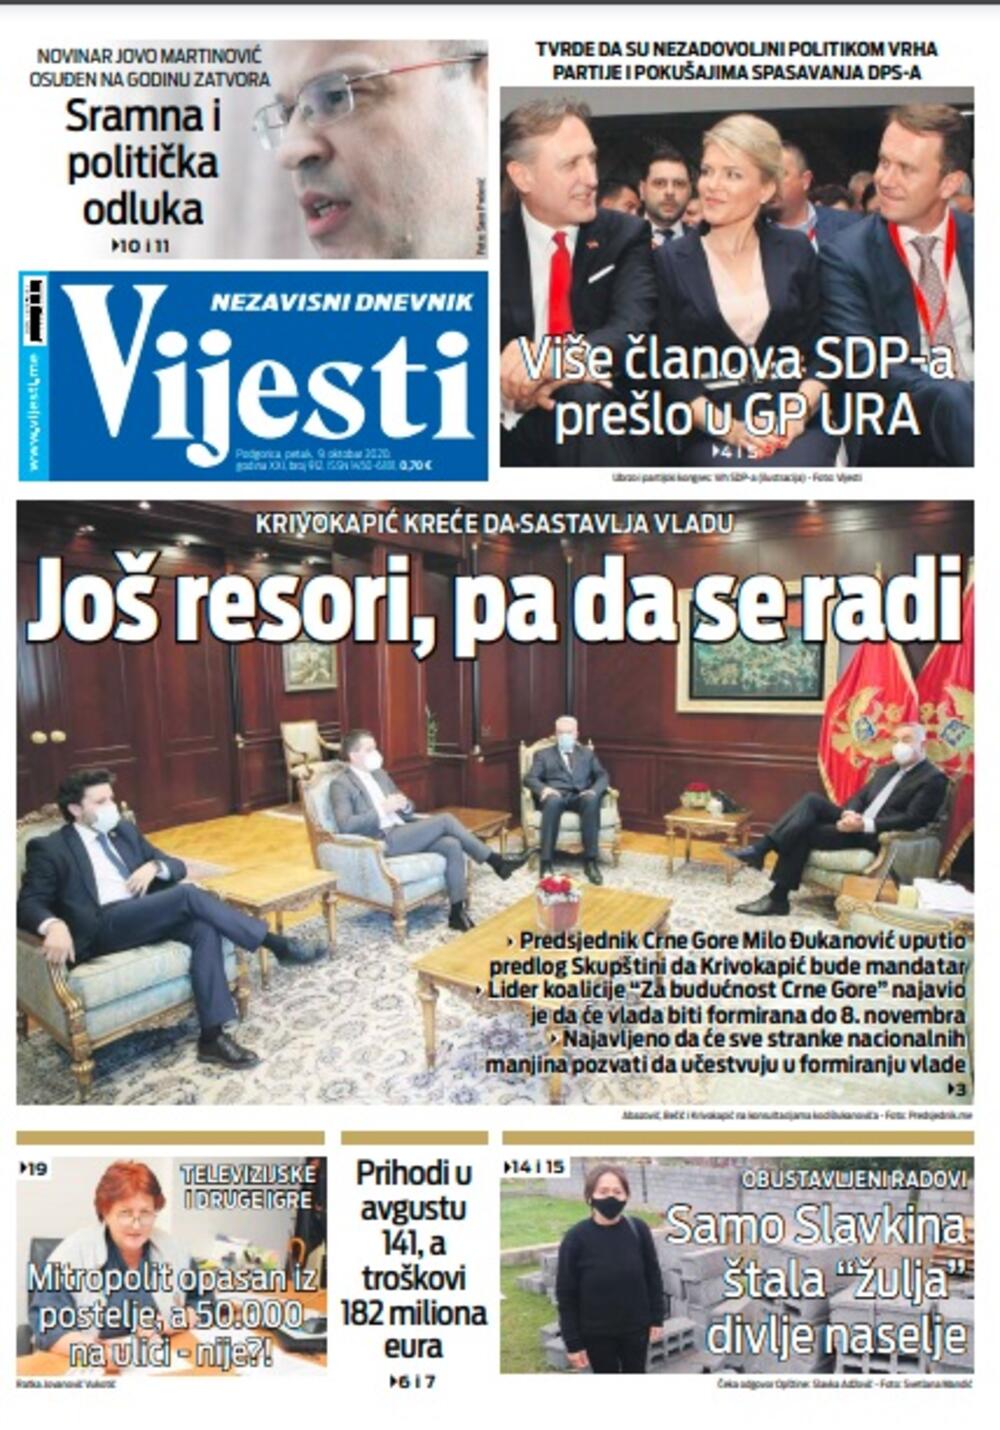 Naslovna strana "Vijesti" za petak 9. oktobar 2020. godine, Foto: Vijesti